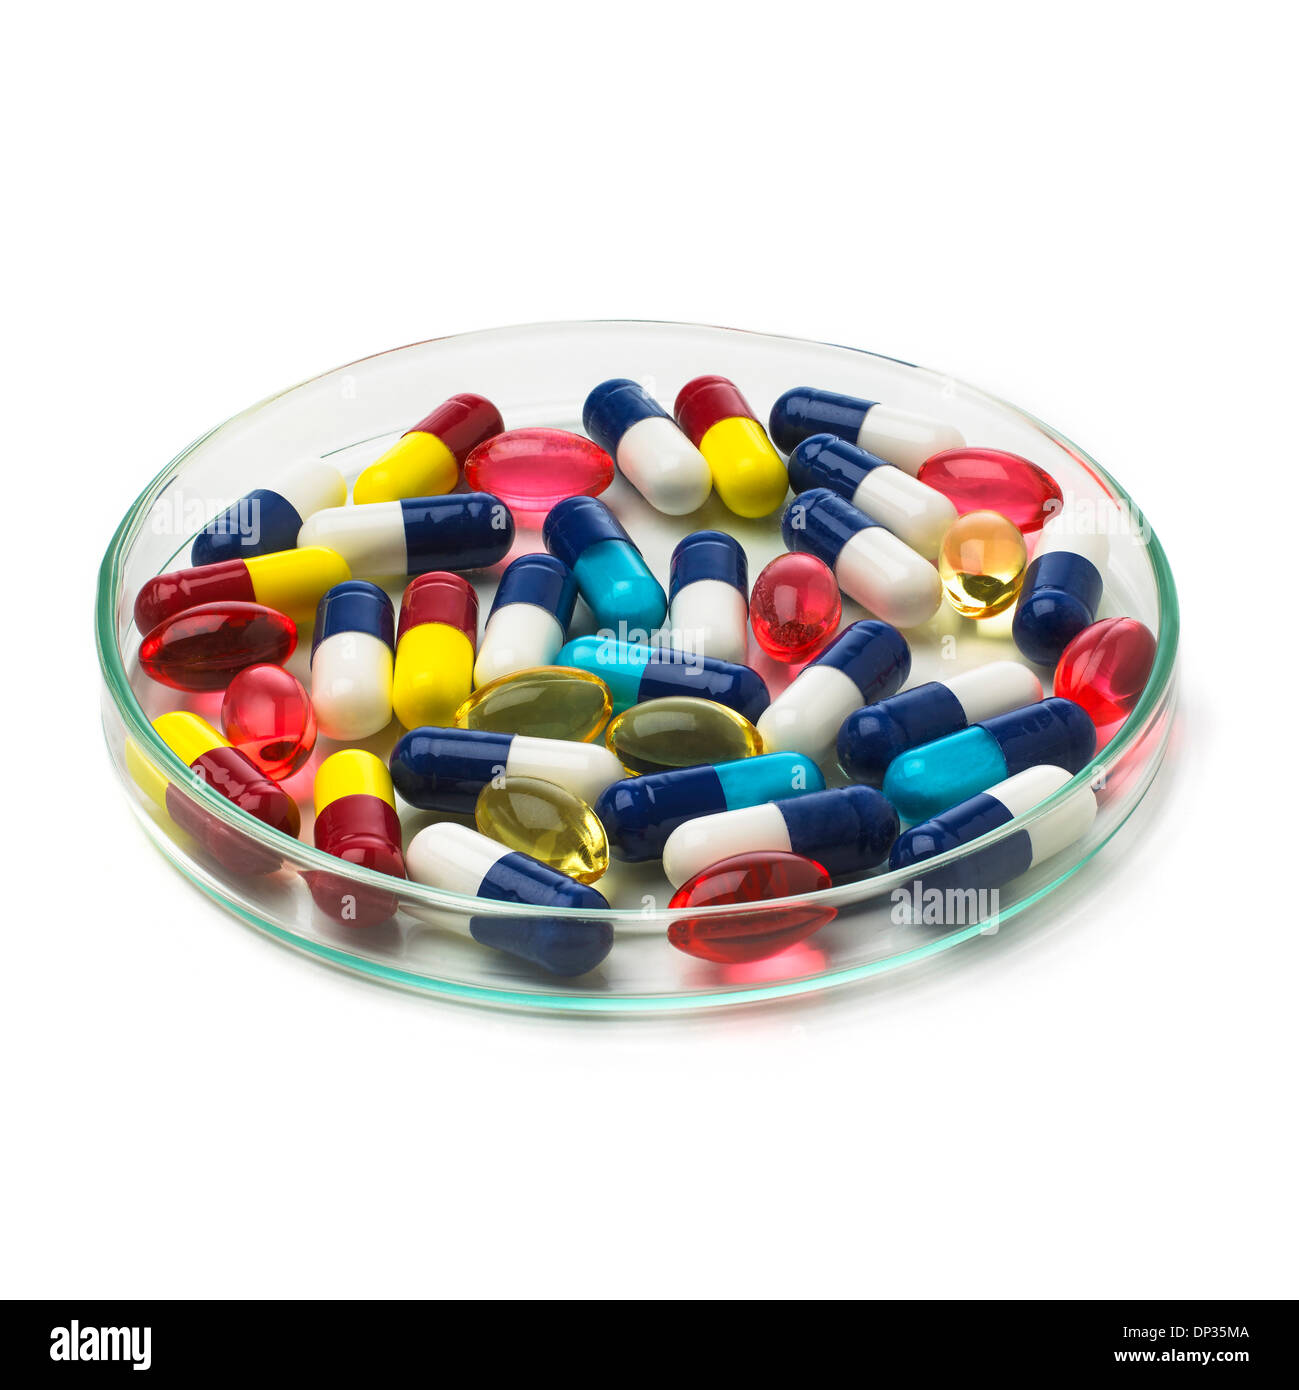 La investigación farmacéutica, imagen conceptual Foto de stock